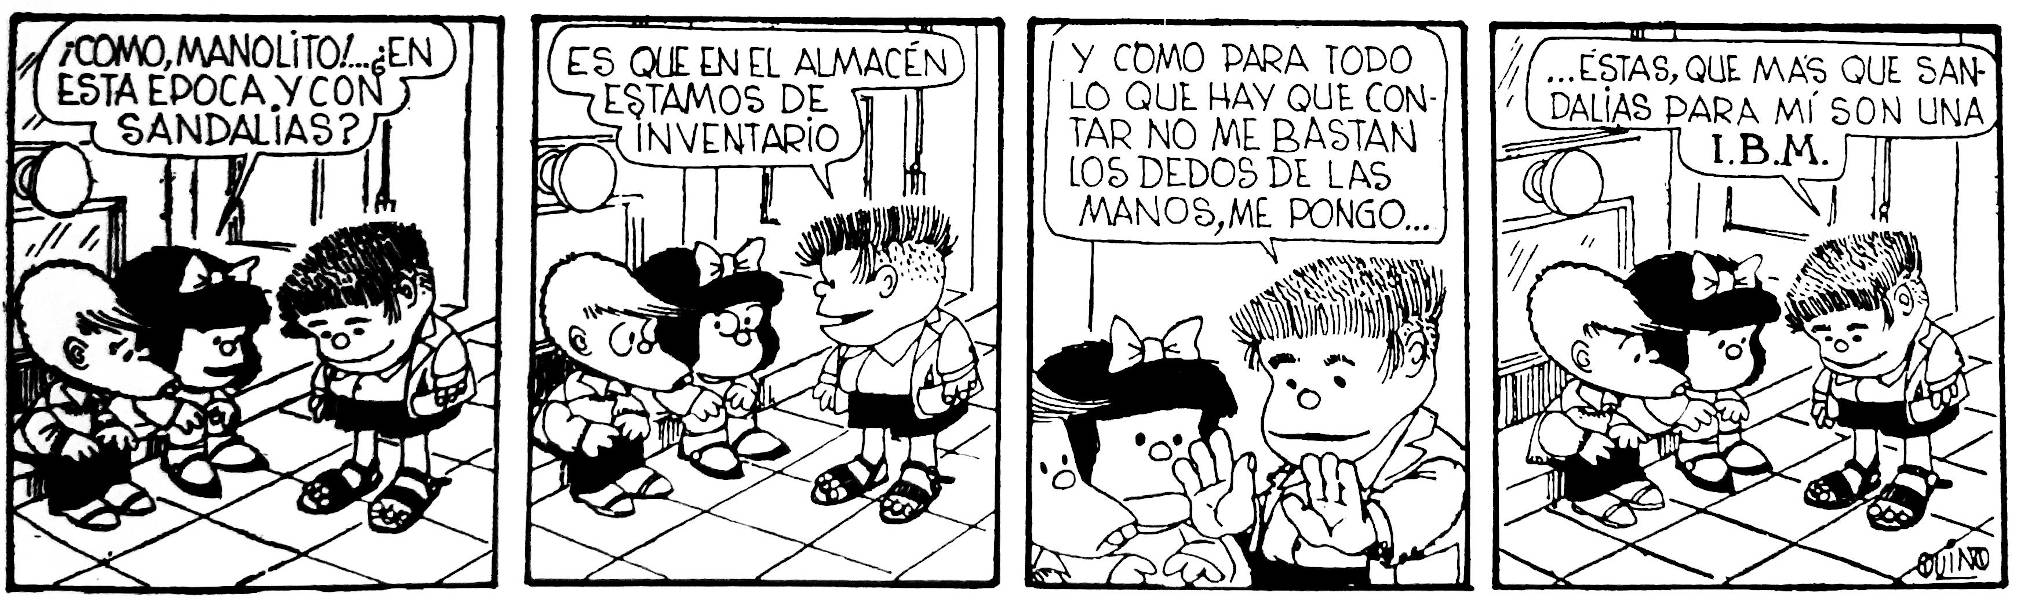 Tira de Mafalda con Manolito con sandalias, que usa poder para contar con más dedos.